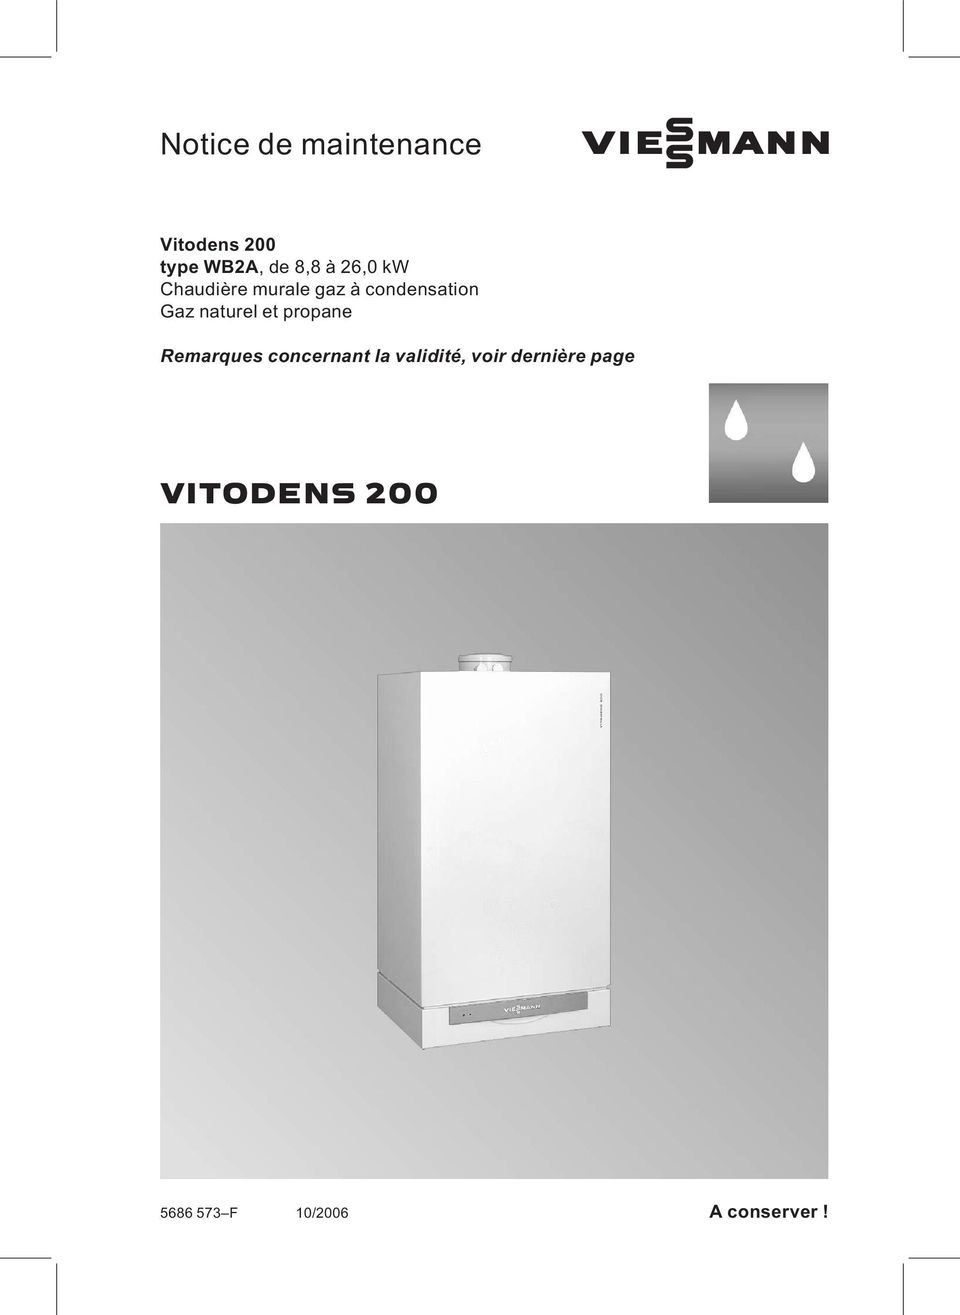 VIESMANN. Notice de maintenance VITODENS 200. Vitodens 200 type WB2A, de  8,8 à 26,0 kw Chaudière murale gaz à condensation Gaz naturel et propane -  PDF Téléchargement Gratuit